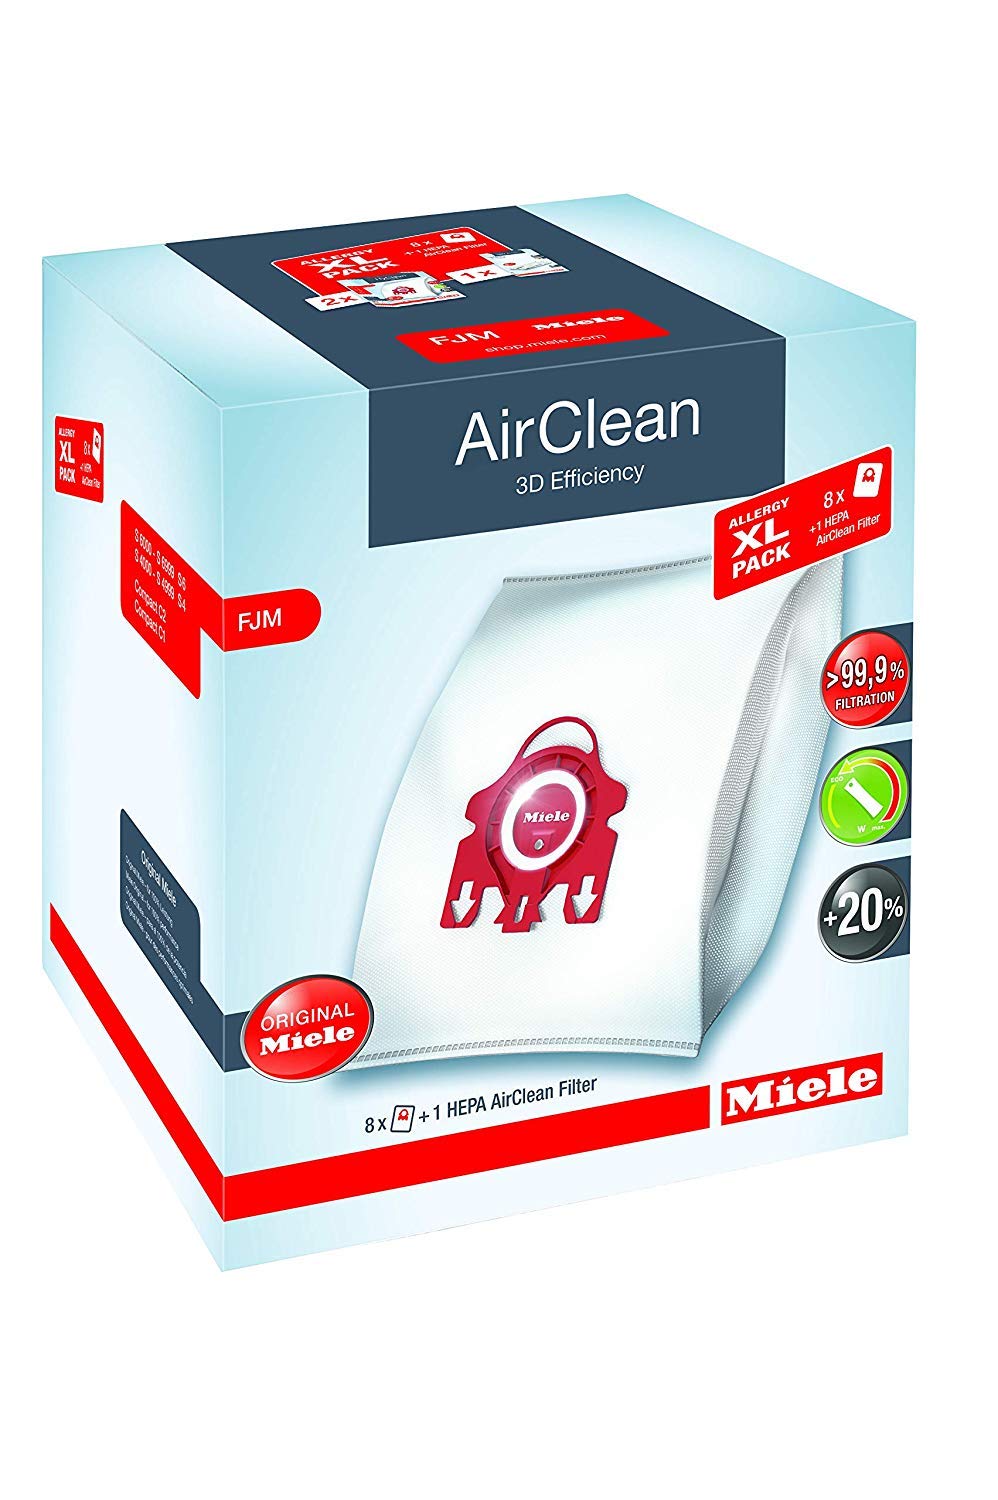 Miele XL Performance Pack AirClean 3D FJM Vacuum Cleane...